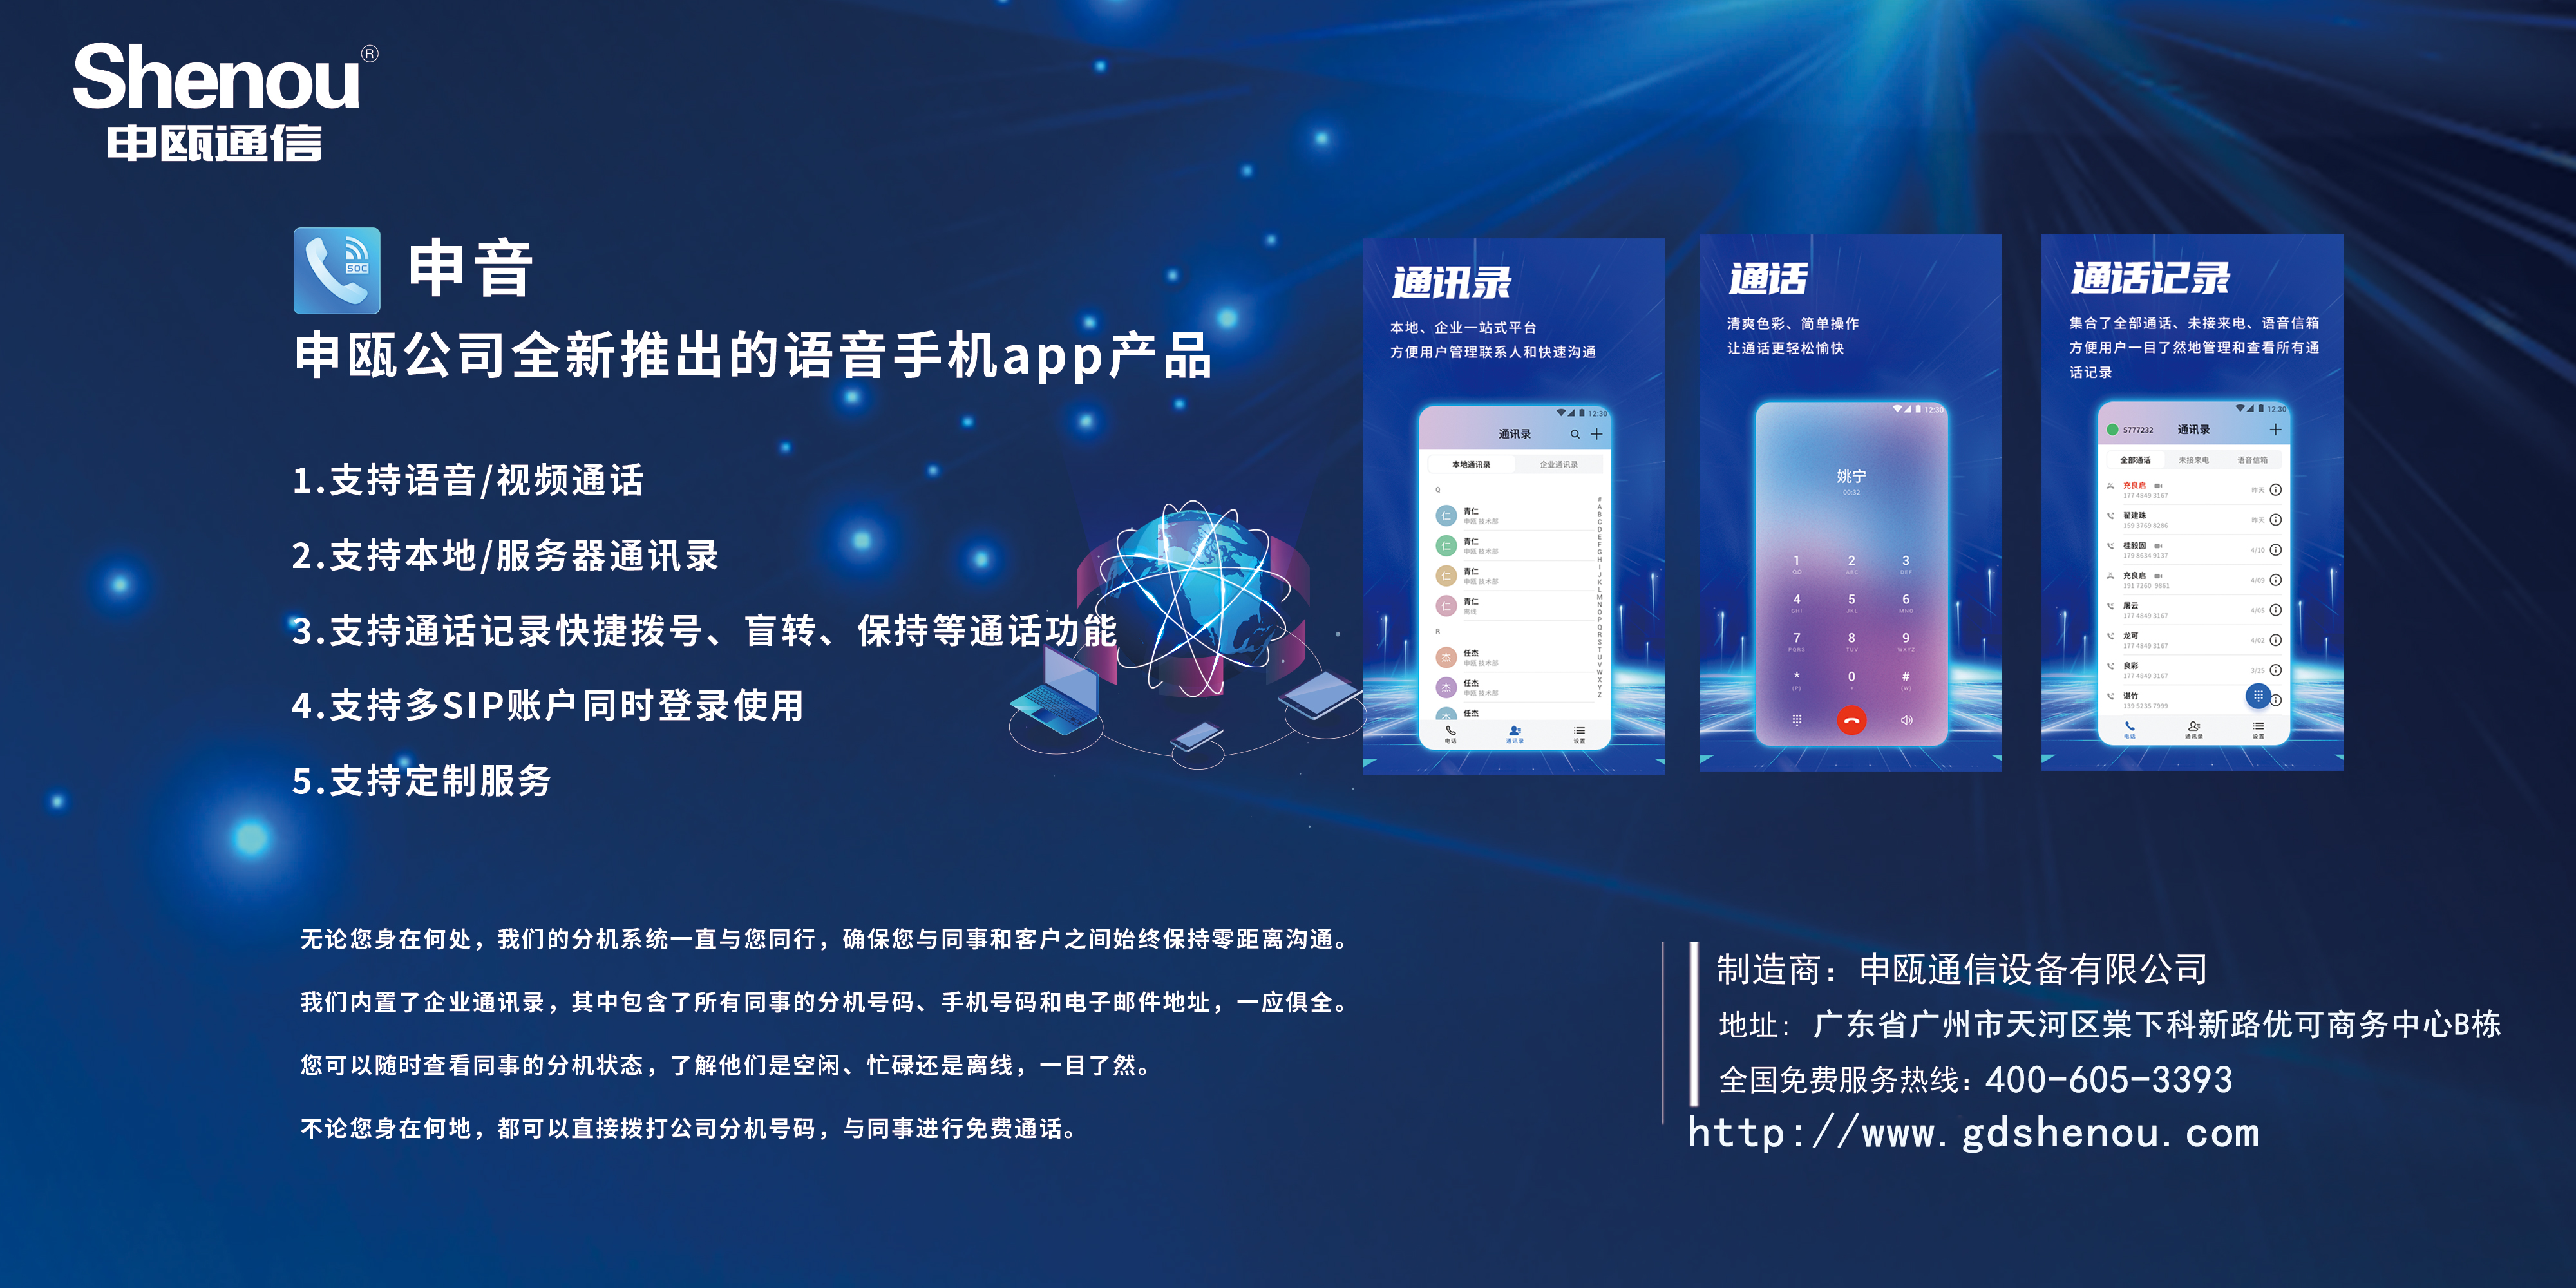 尊龙凯时登录首页公司全新推出的语音手机app产品-申音